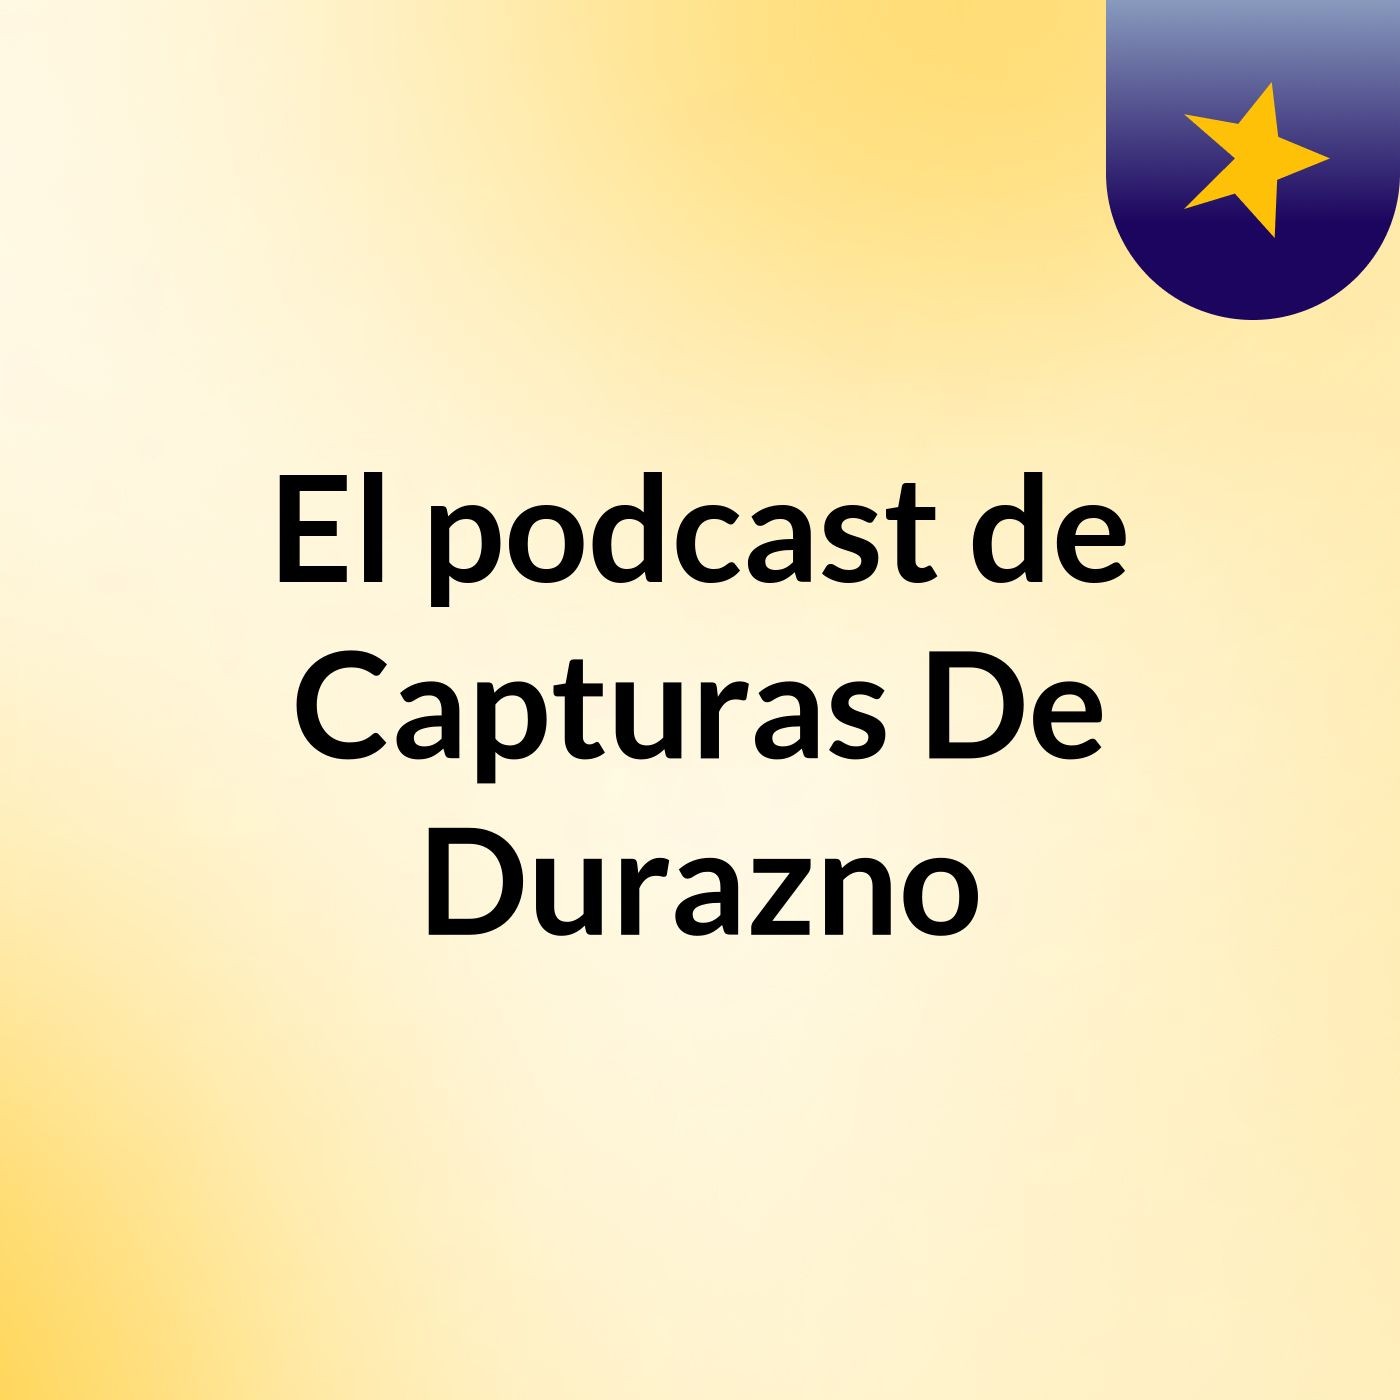 Episodio 10 - El podcast de Capturas De Durazno